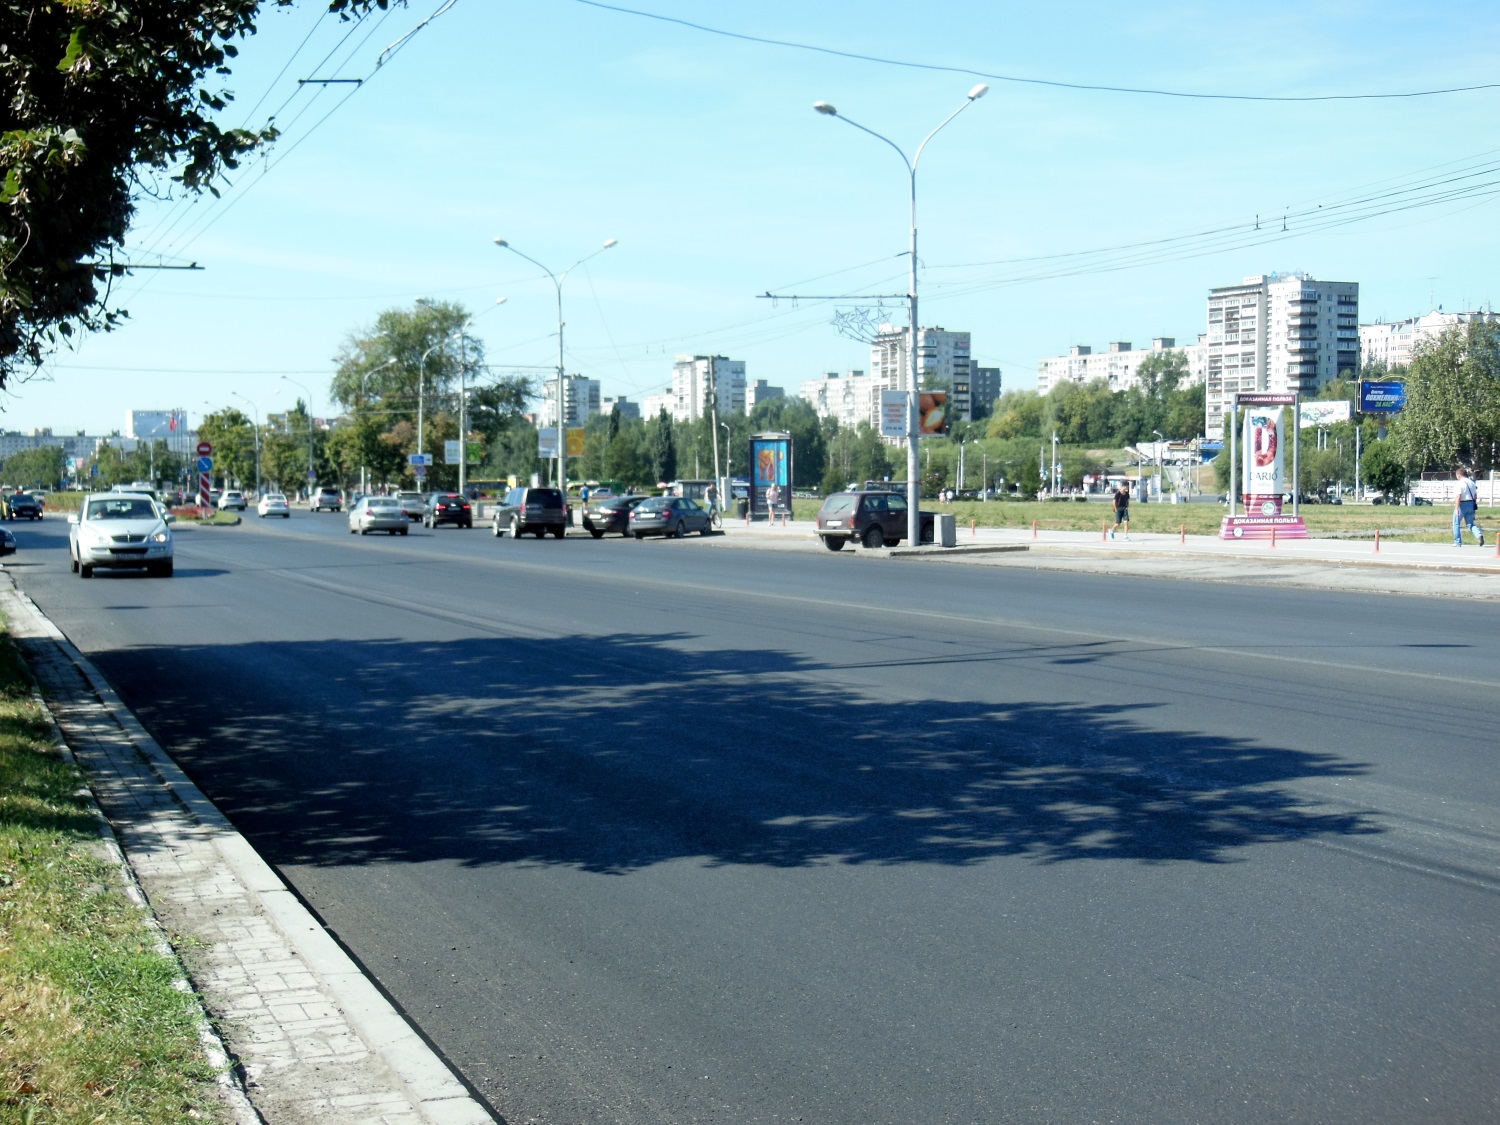 22 тысячи кв. метров покрытия: в Перми завершен ремонт ул. Ленина